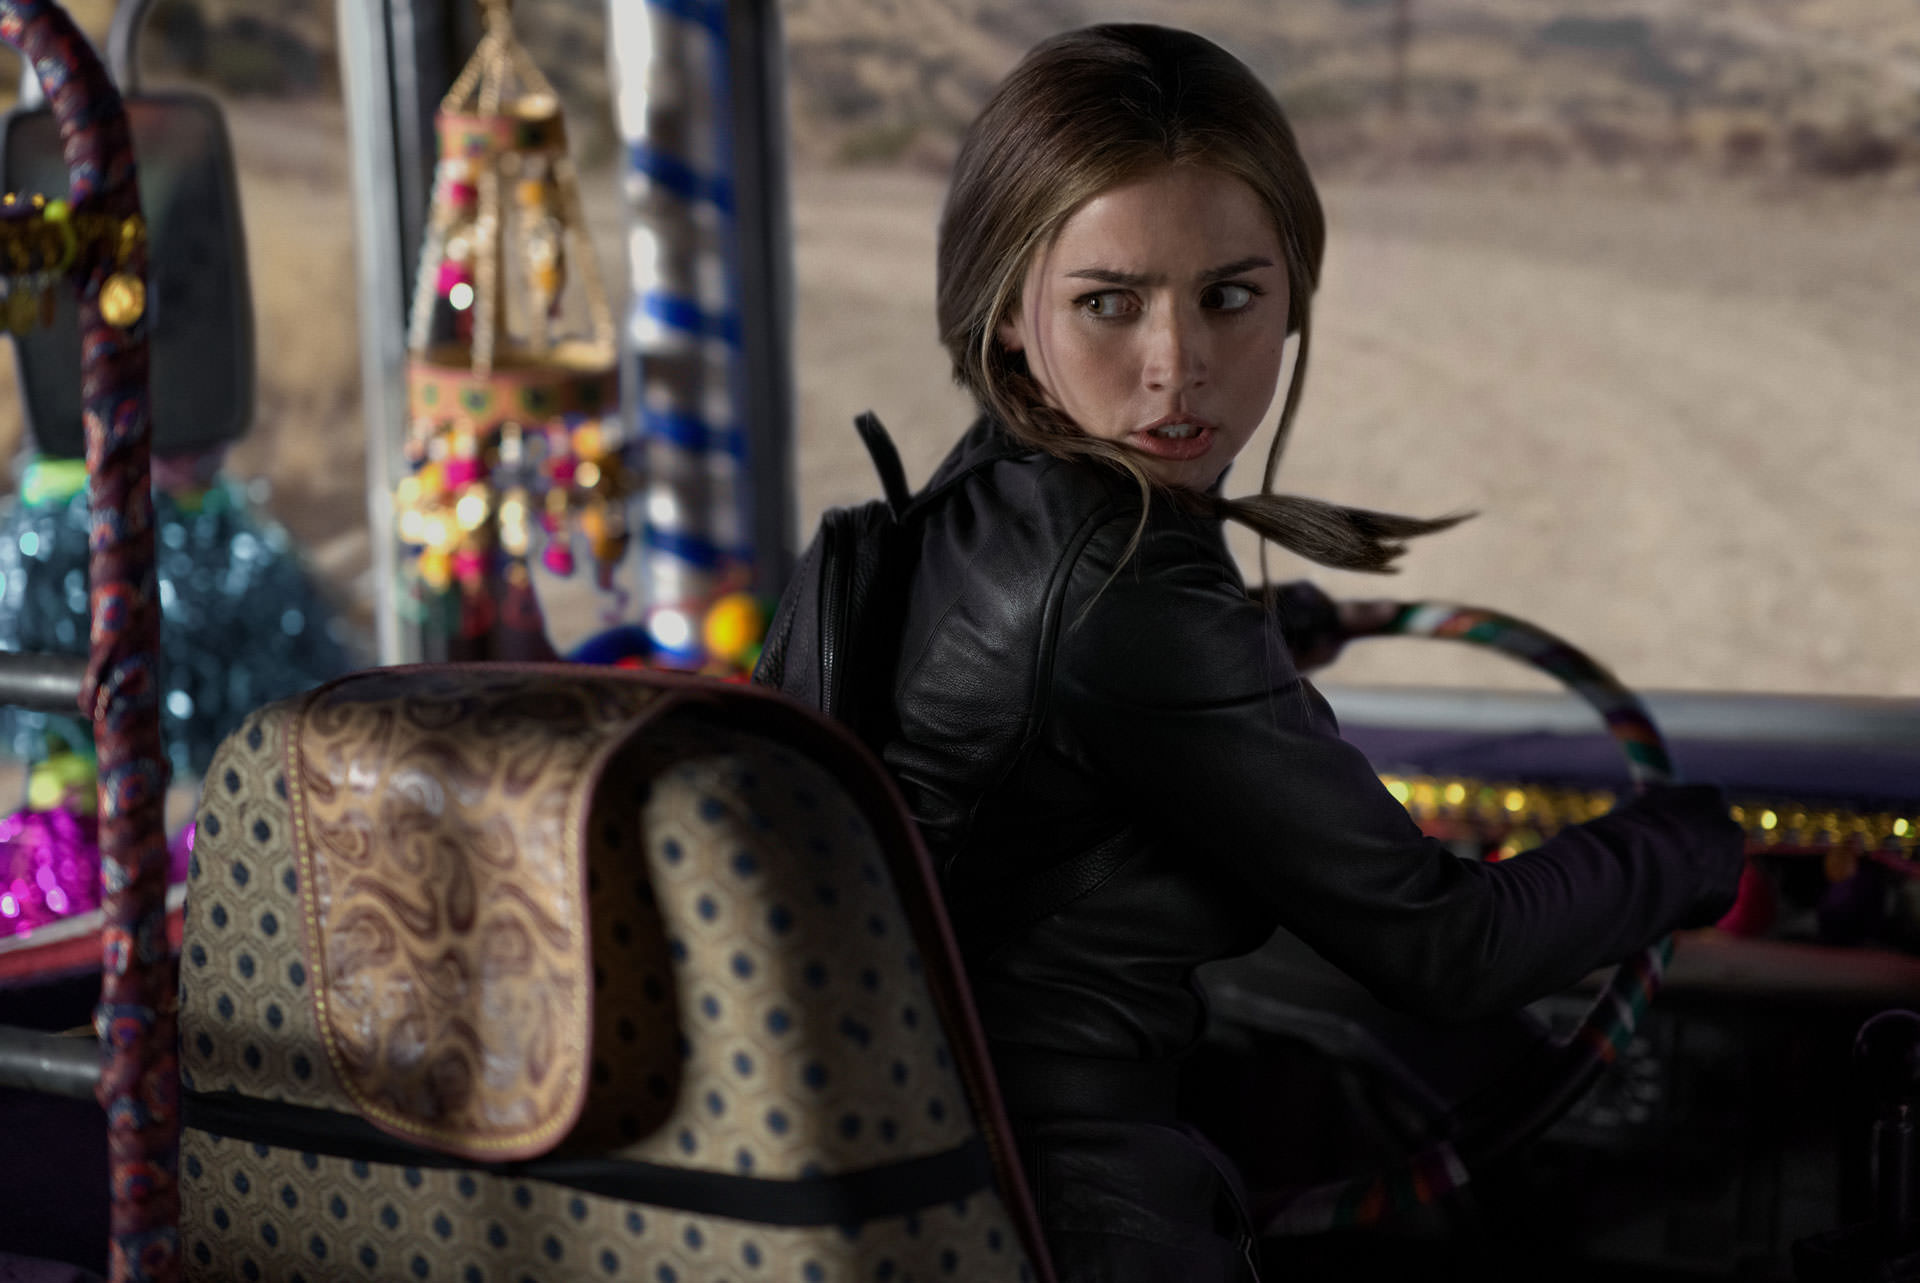 آنا د آرماس پشت فرمان یک اتوبوس قدیمی در حال رانندگی در یک جاده‌ی خاکی در حالی که به عقب نگاه می‌کند در نمایی از فیلم روح شده به کارگردانی دکستر فلچر